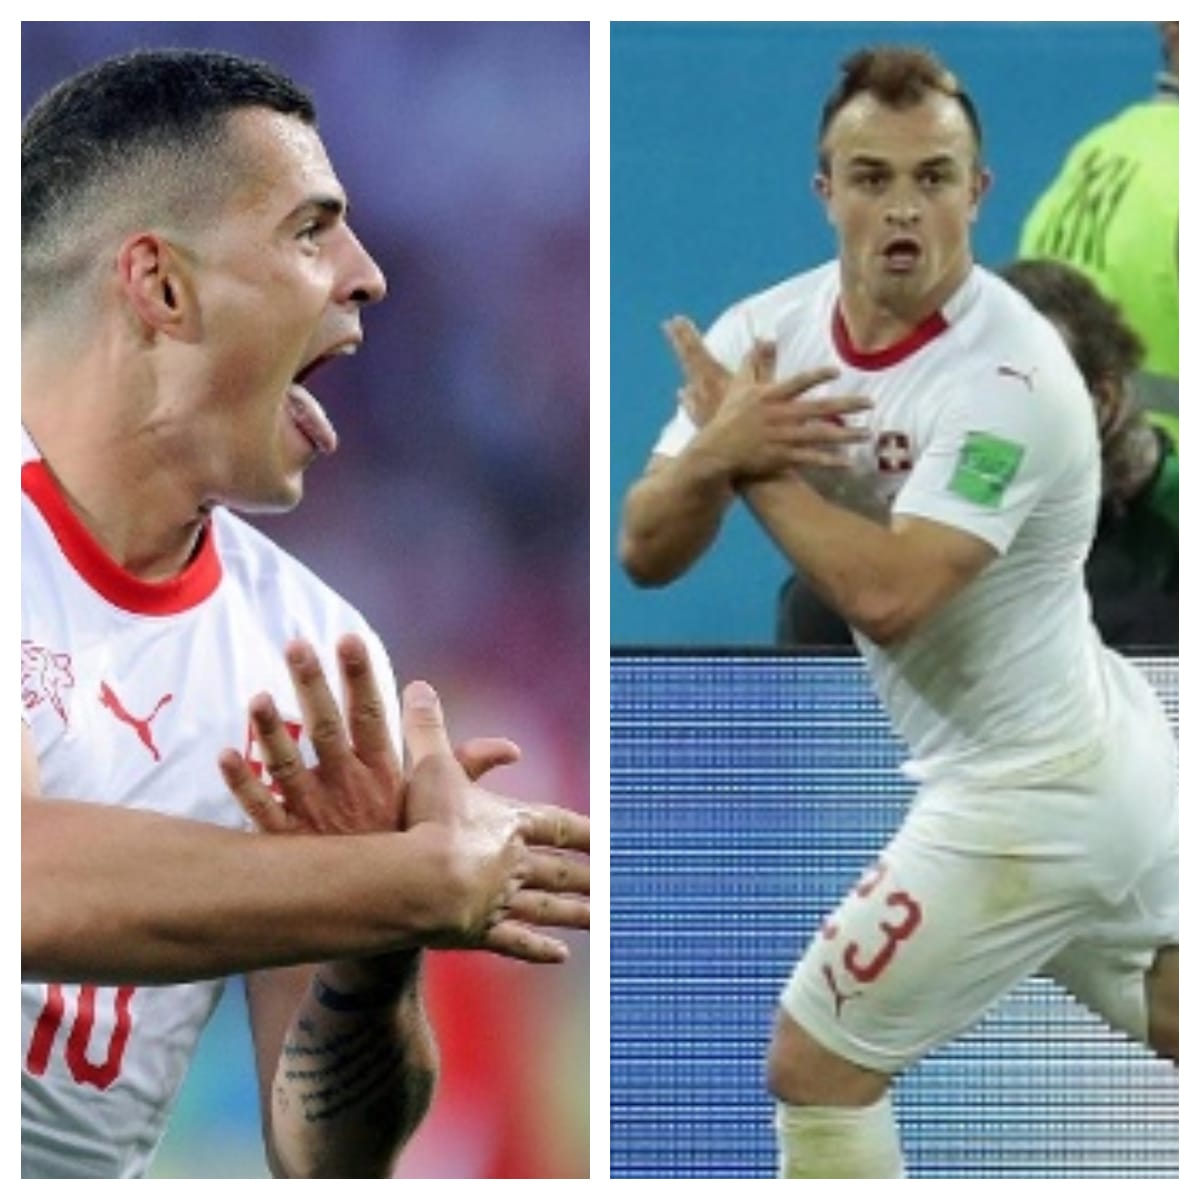 Für die Schweizer Granit Xhaka (links) und Xherdan Shaqiri gibt es ein Nachspiel: Die Fifa bestraft die Spieler für ihren Doppeladler-Jubel. Nach dem Sieg gegen Serbien formen die ehemaligen Bundesliga-Spieler den doppelköpfigen Adler, der auf der Flagge Albaniens zu sehen ist und eine Provokation in Richtung der Serben darstellt.